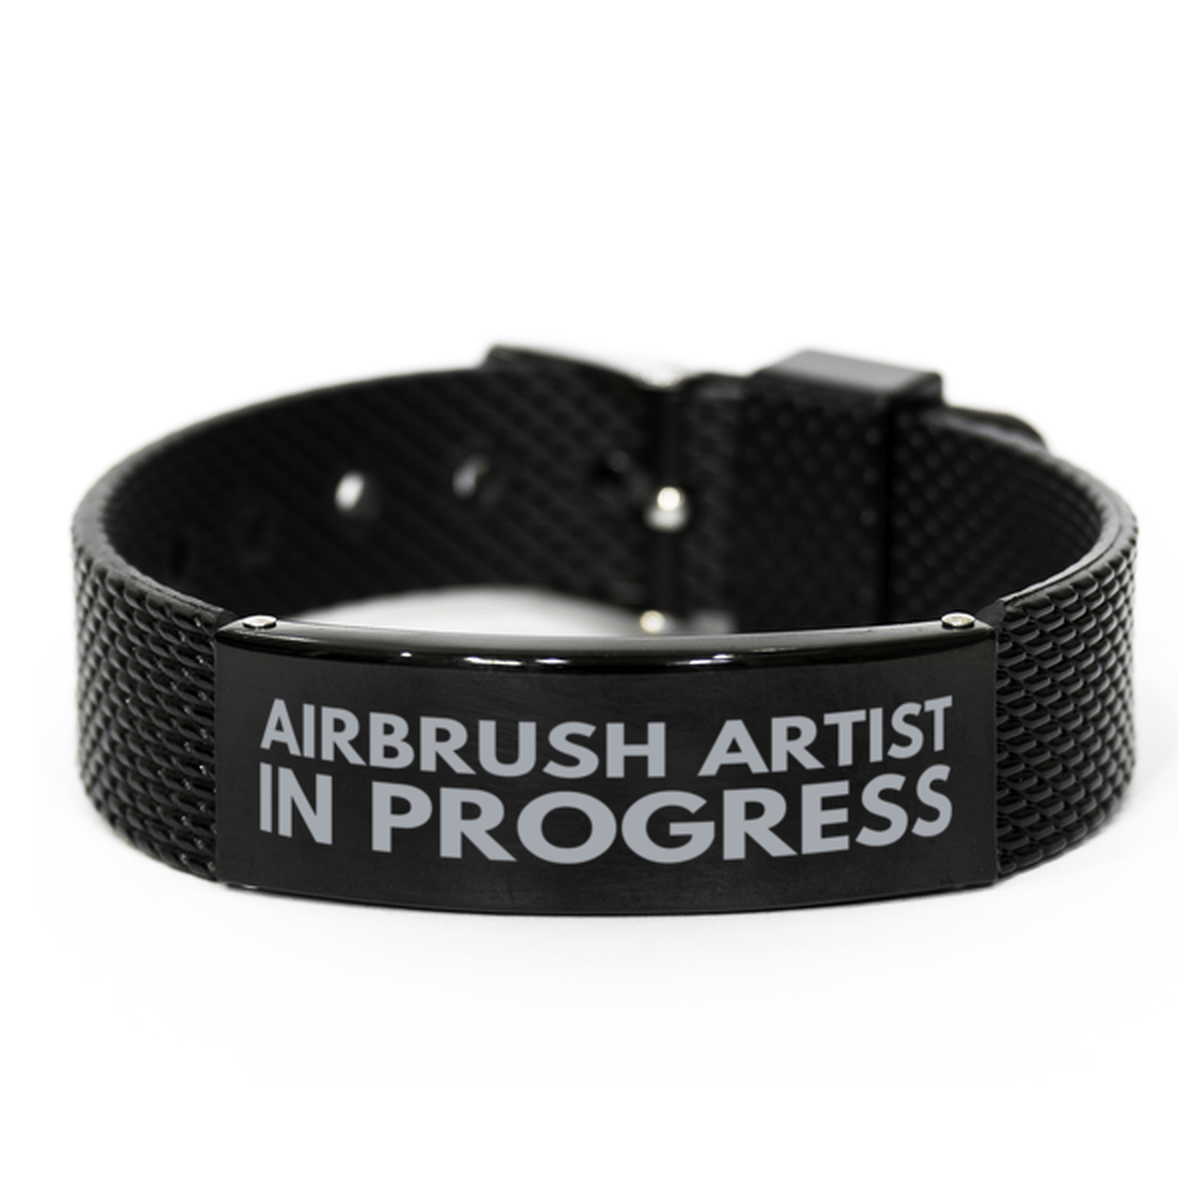 Inspirational Airbrush Artist Black Shark Mesh Bracelet, Airbrush Artist In Progress, Best Graduation Gifts for Students